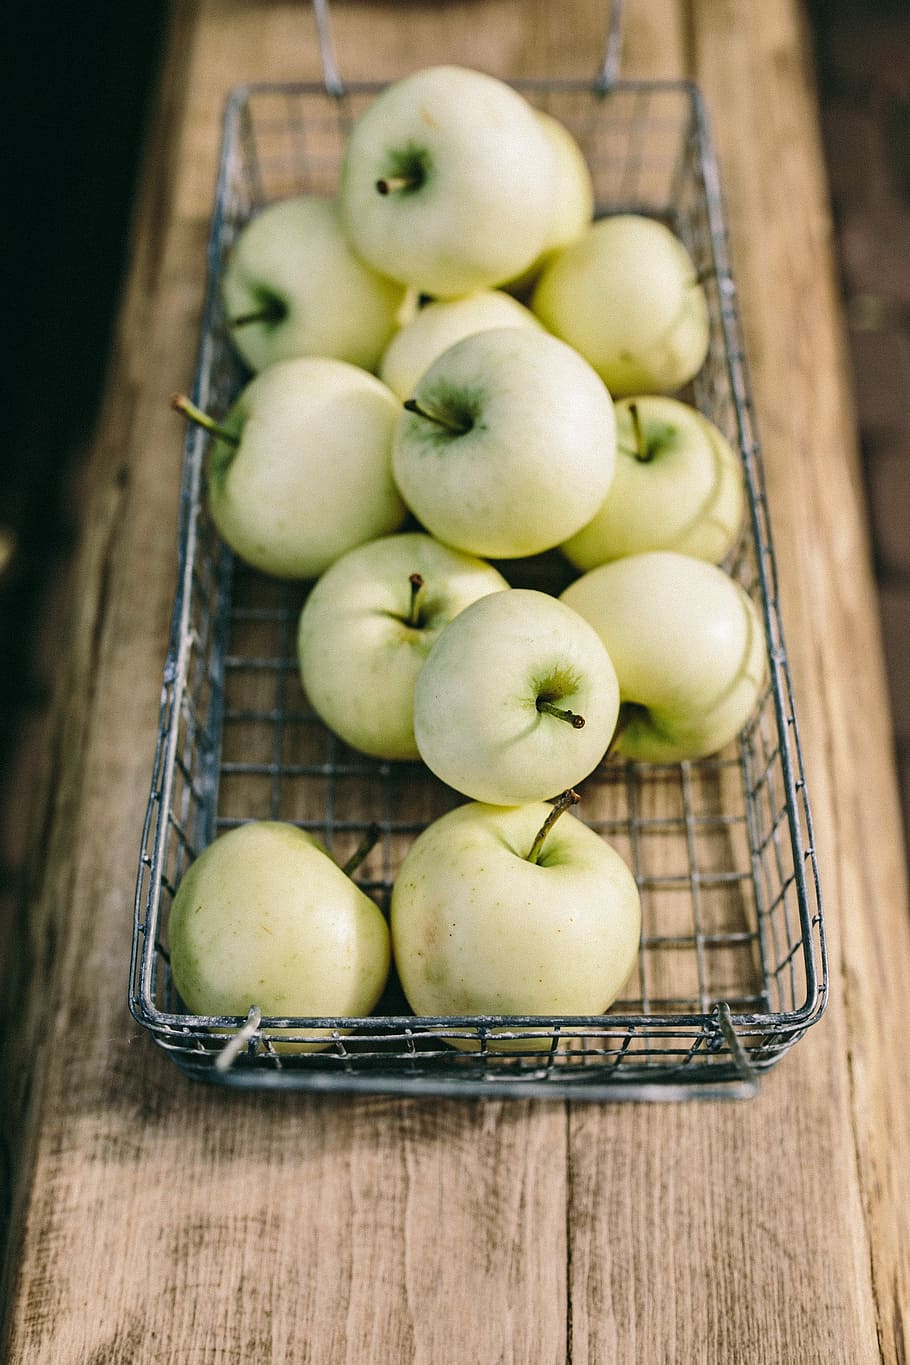 hijau, apel, keranjang, sehat, apel hijau, buah, buah-buahan, segar, organik, kesehatan